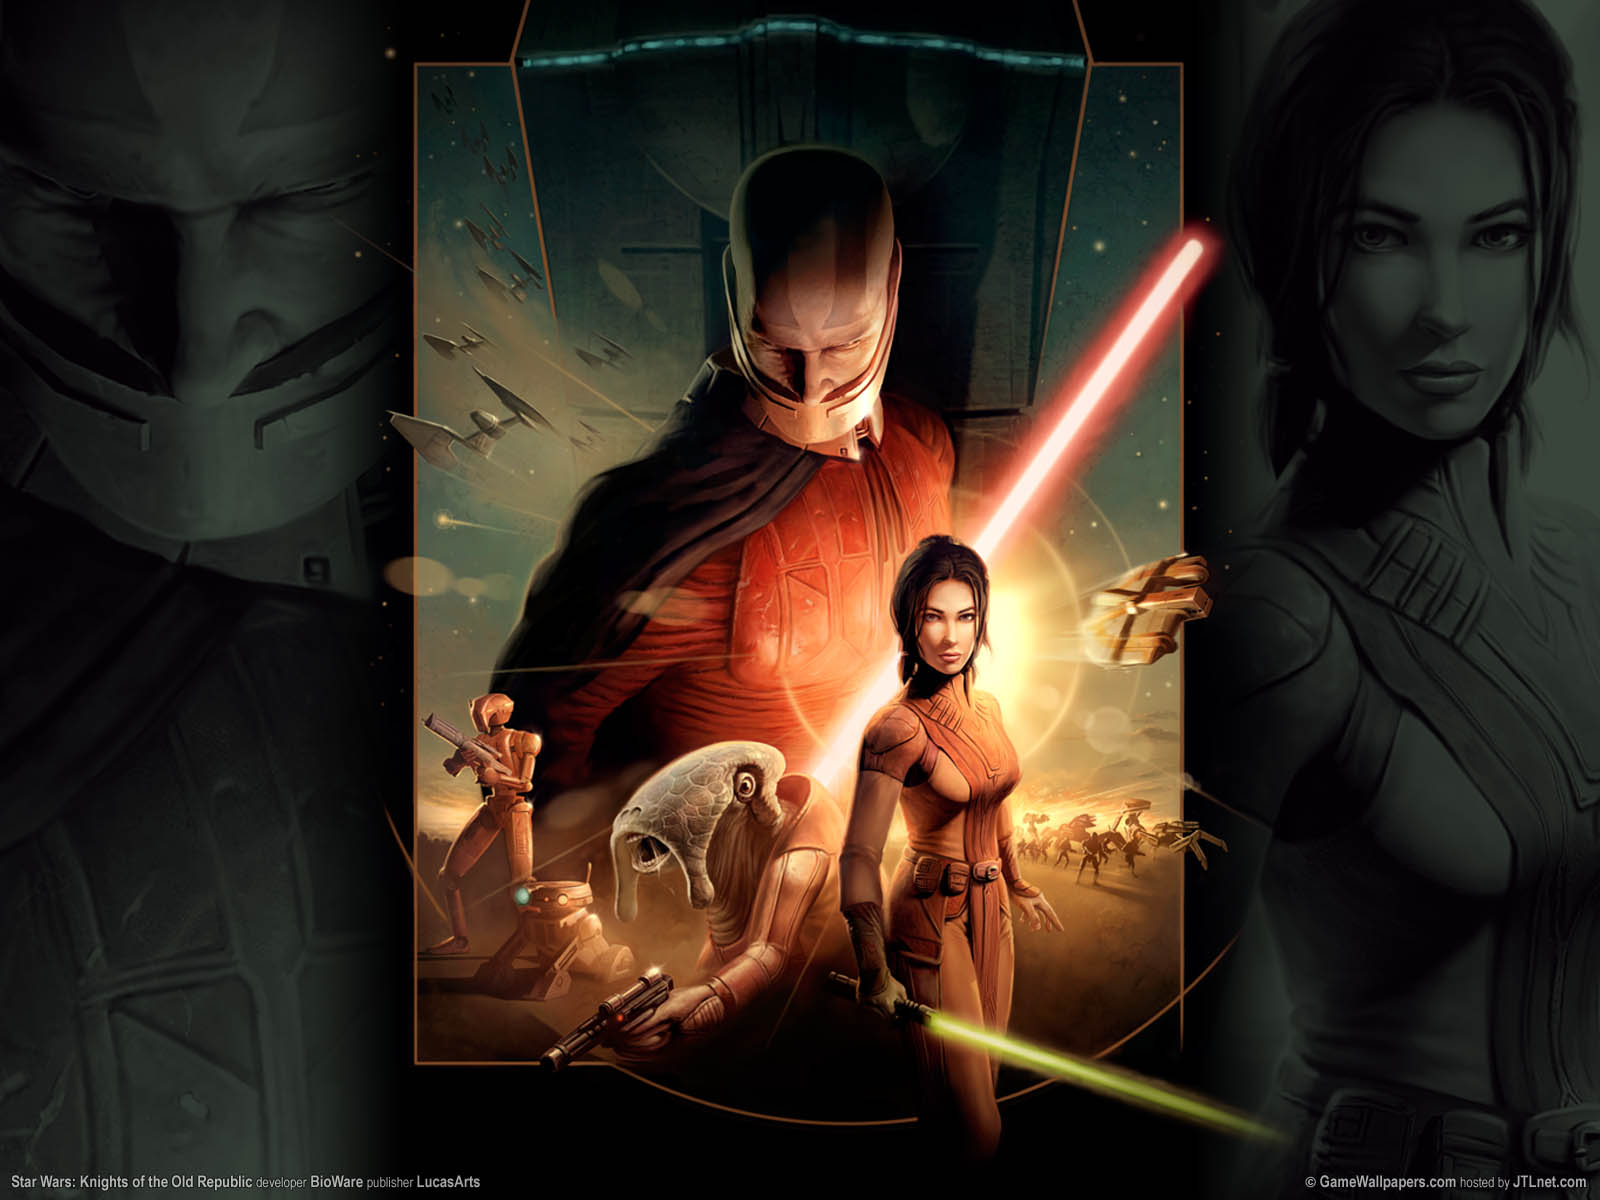 Star Wars: Knights of the Old Republic fond d'cran 02 1600x1200